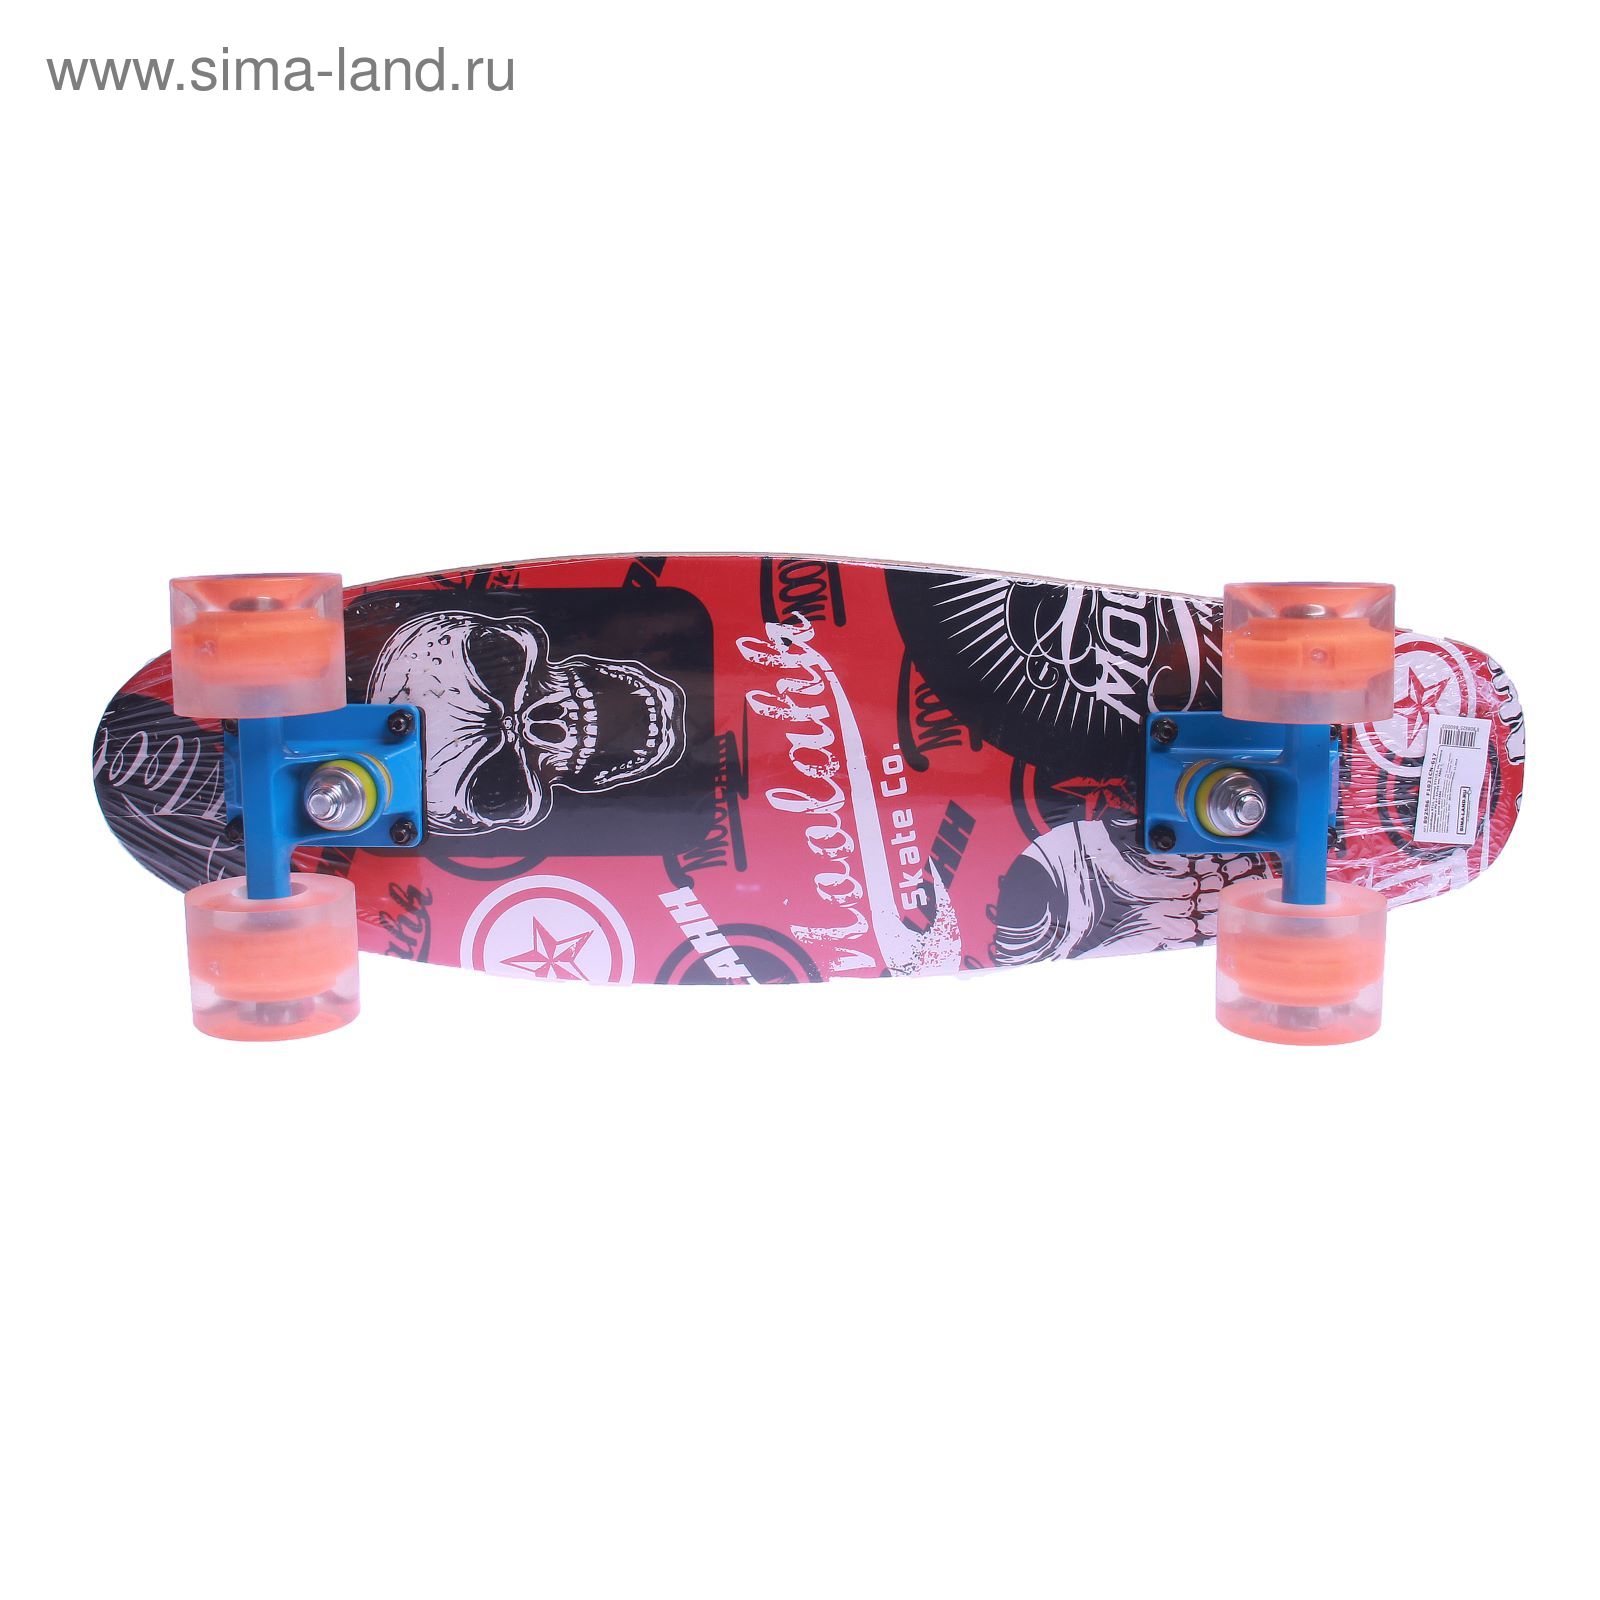 Скейтборд S711, PU d= 57*45 мм, алюминиевая рама, цвета микс